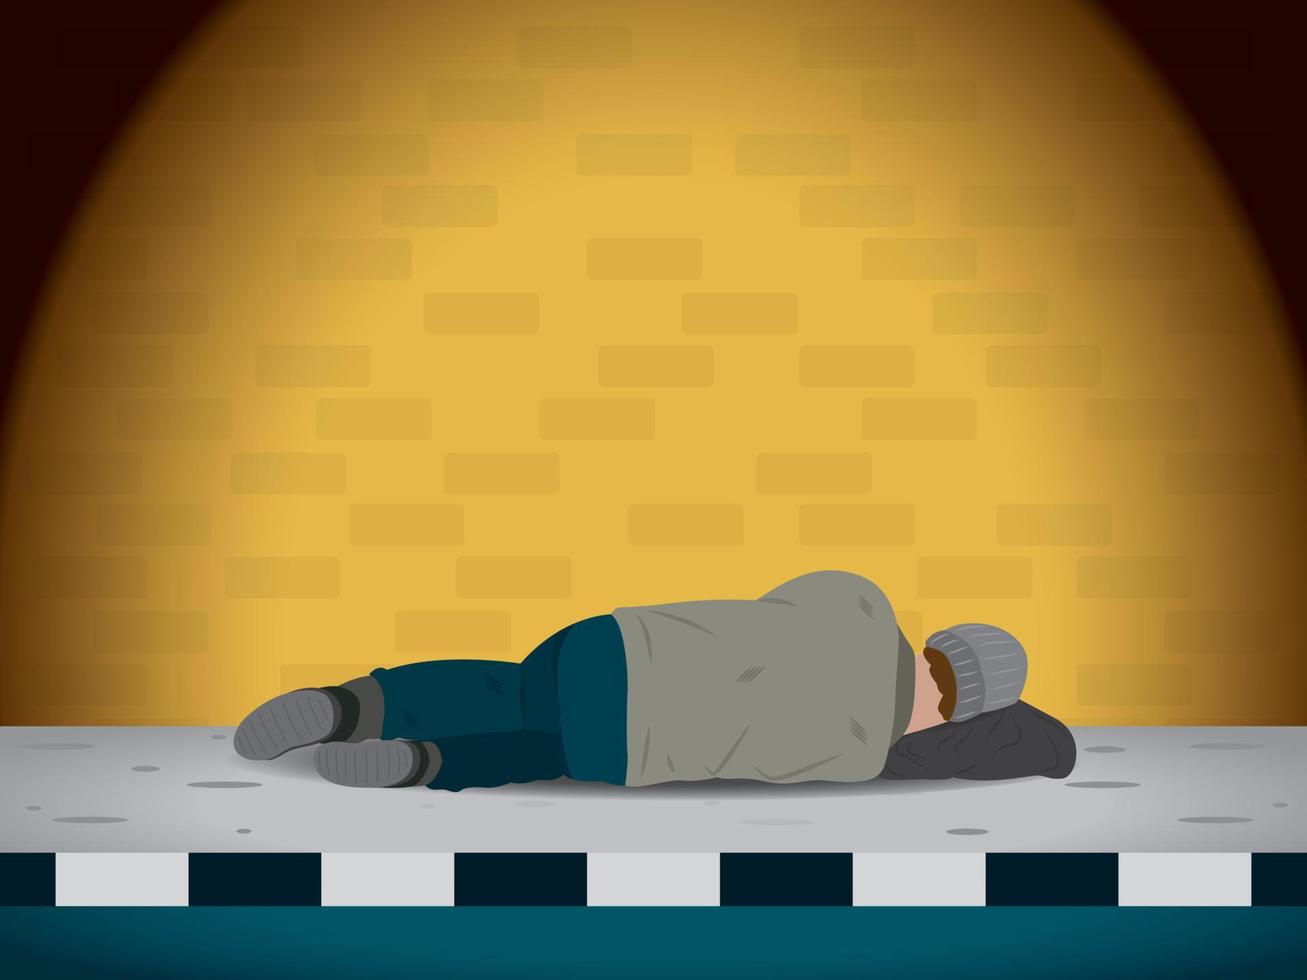 il senzatetto dorme sul sentiero. vettore di illustrazione del problema dei senzatetto.